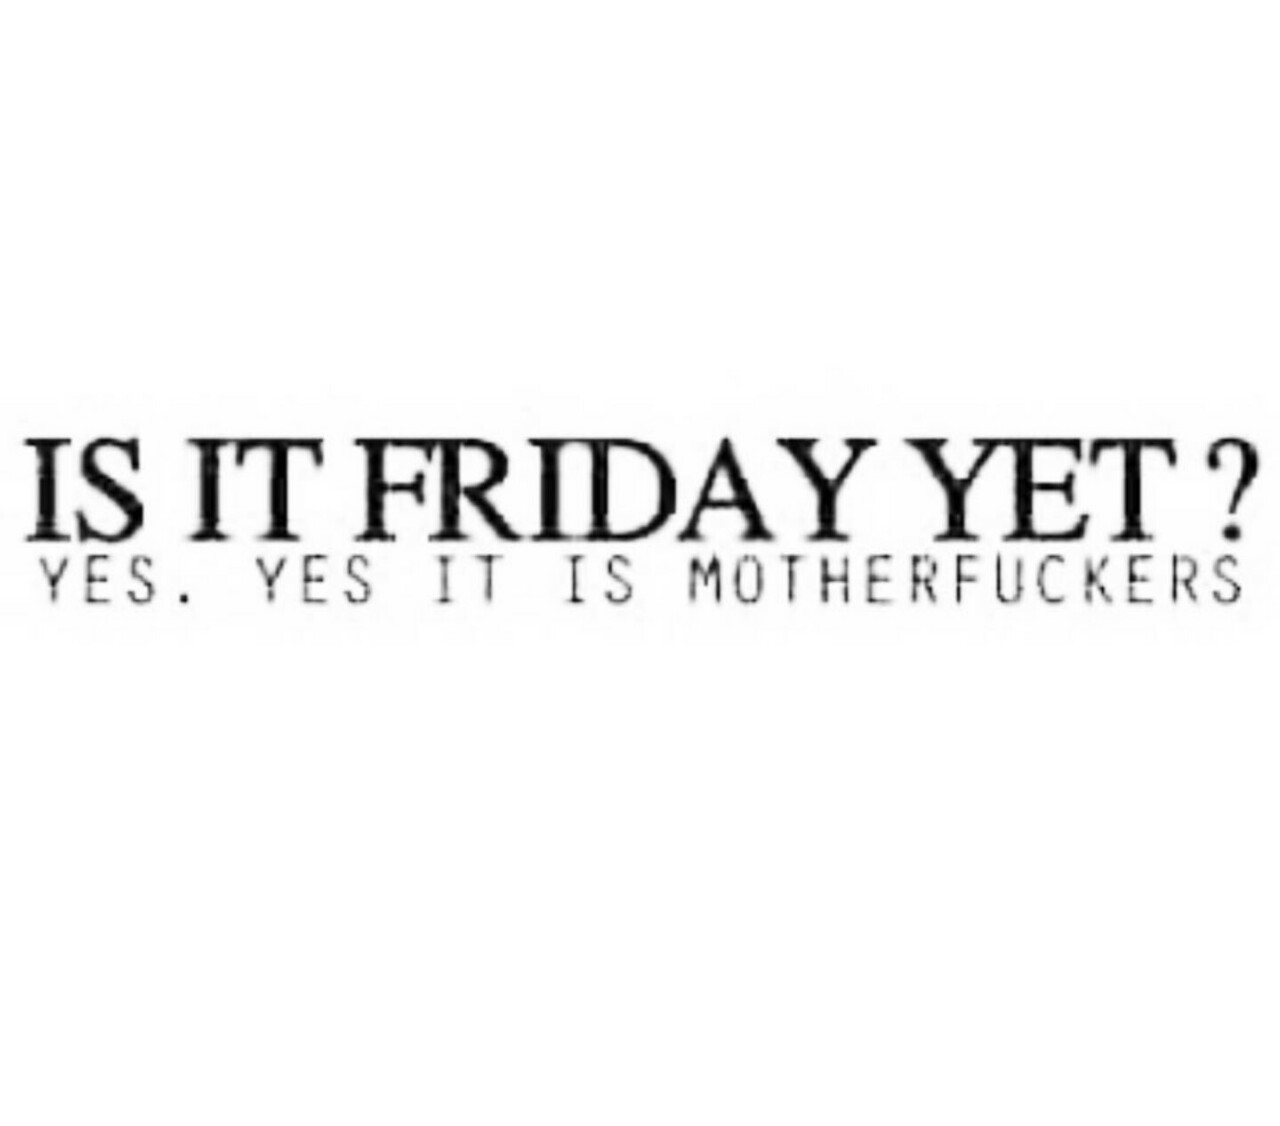 asspreciationassfreak: Damn straight it is! Happy Weekend Everyone (and Happy “Weak”